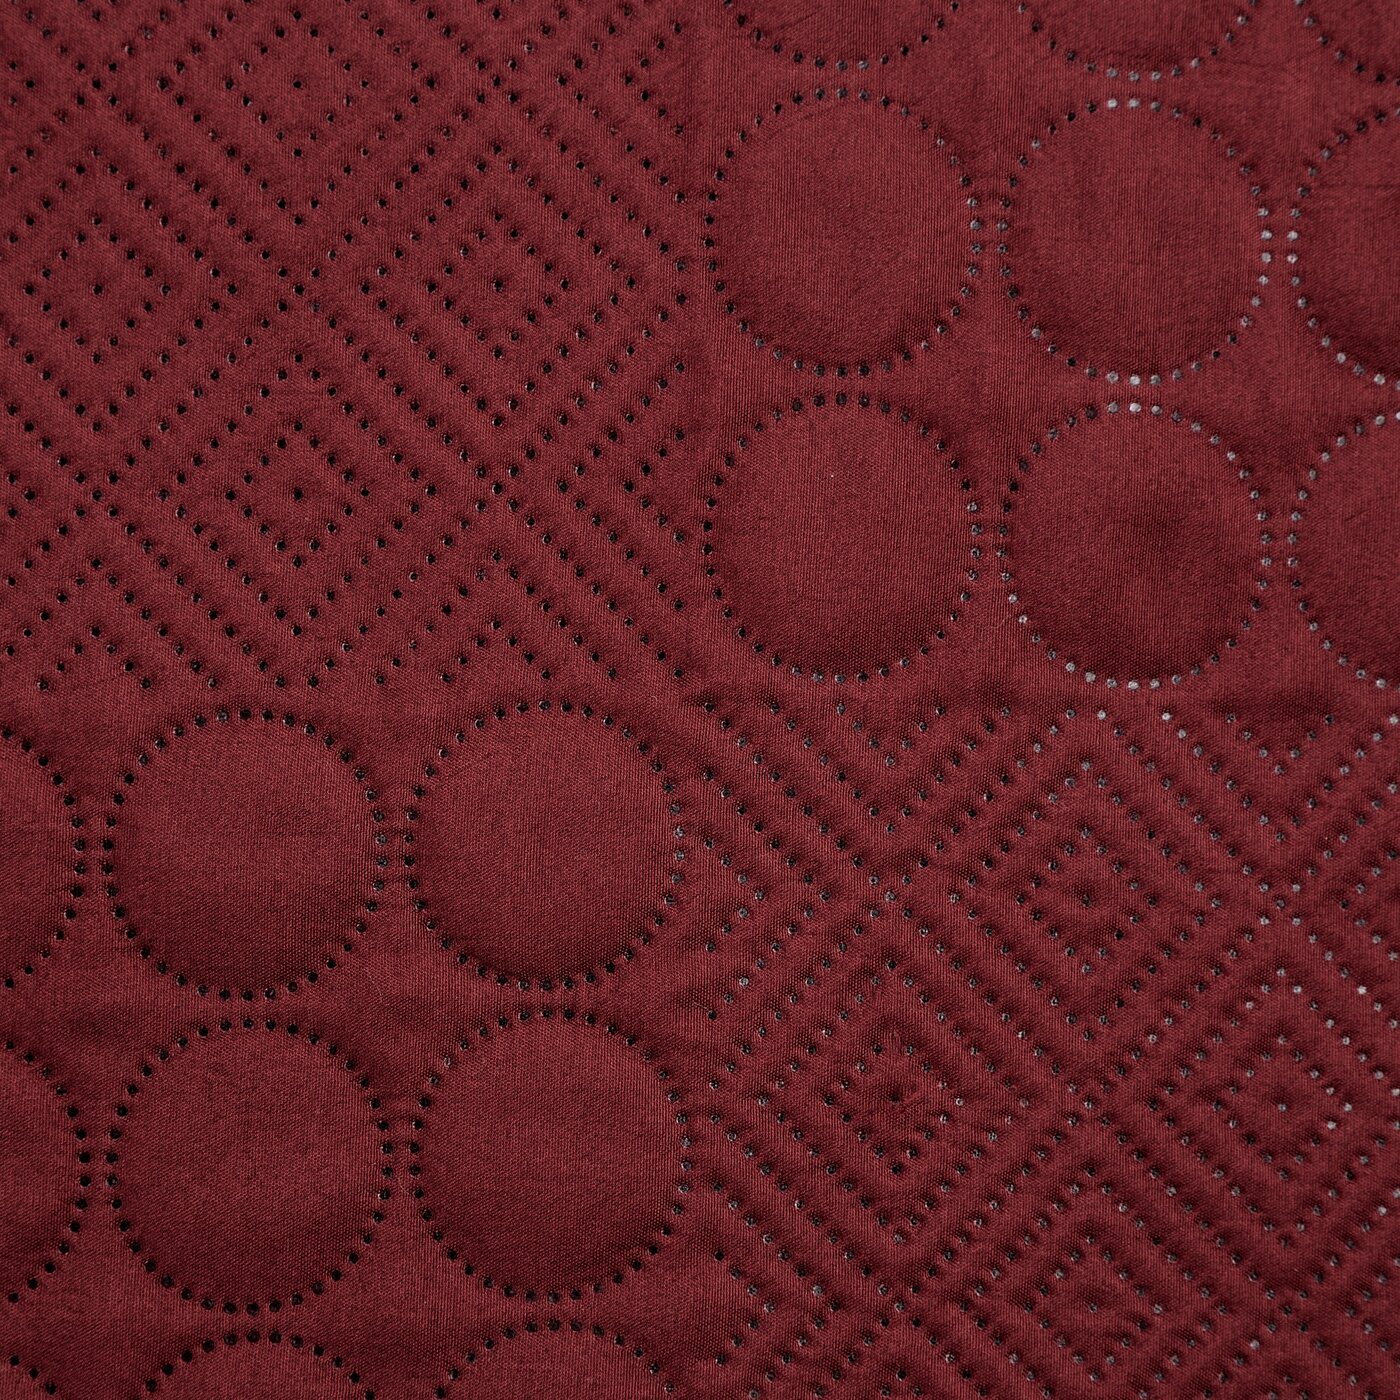 Cuvertură de Pat cu model patchwork presat la cald roșu BONI Perdele de Poveste